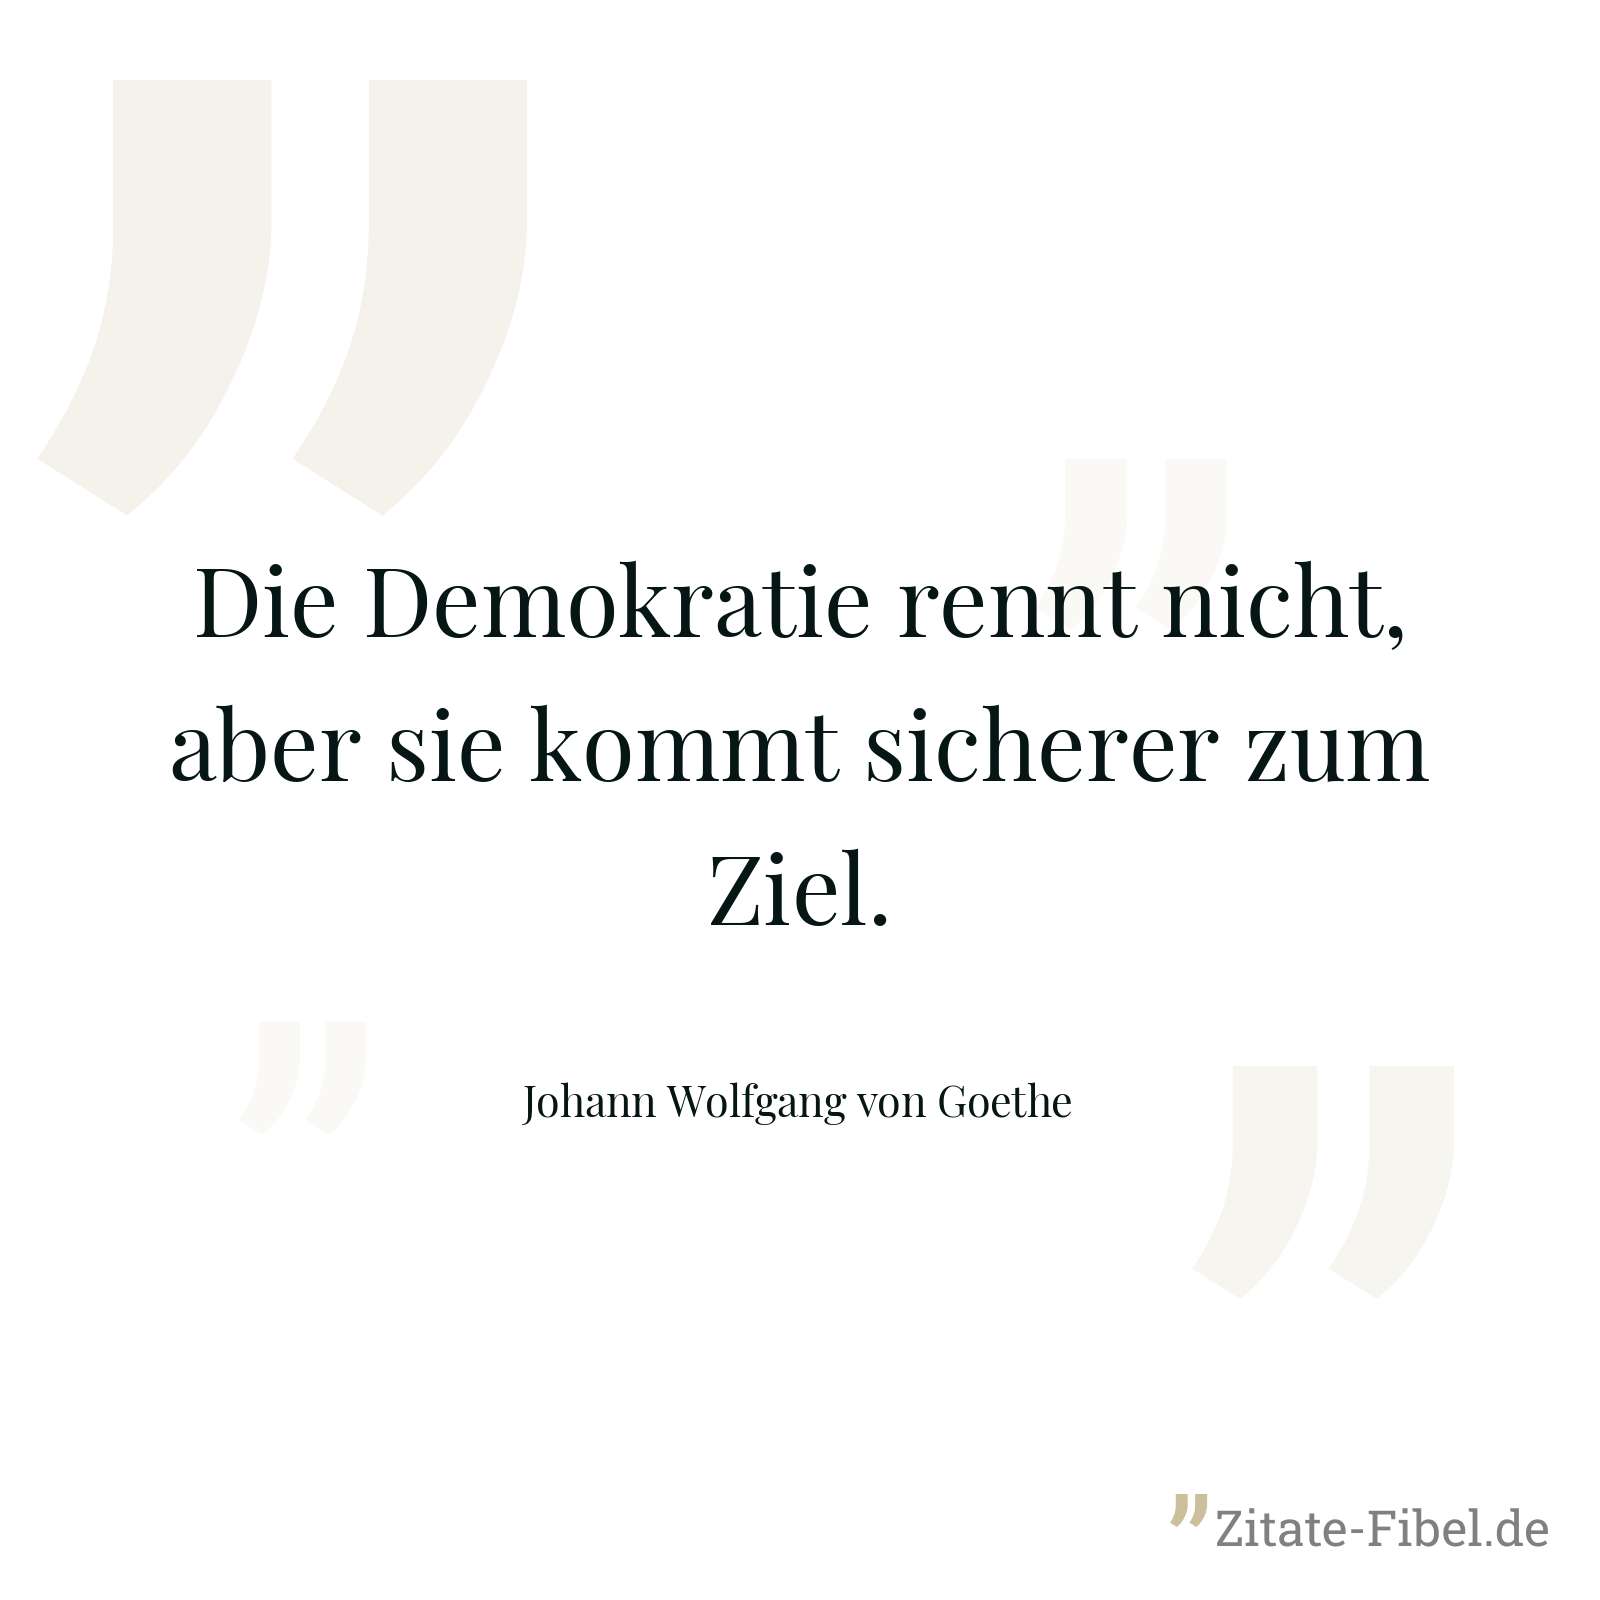 Die Demokratie rennt nicht, aber sie kommt sicherer zum Ziel. - Johann Wolfgang von Goethe